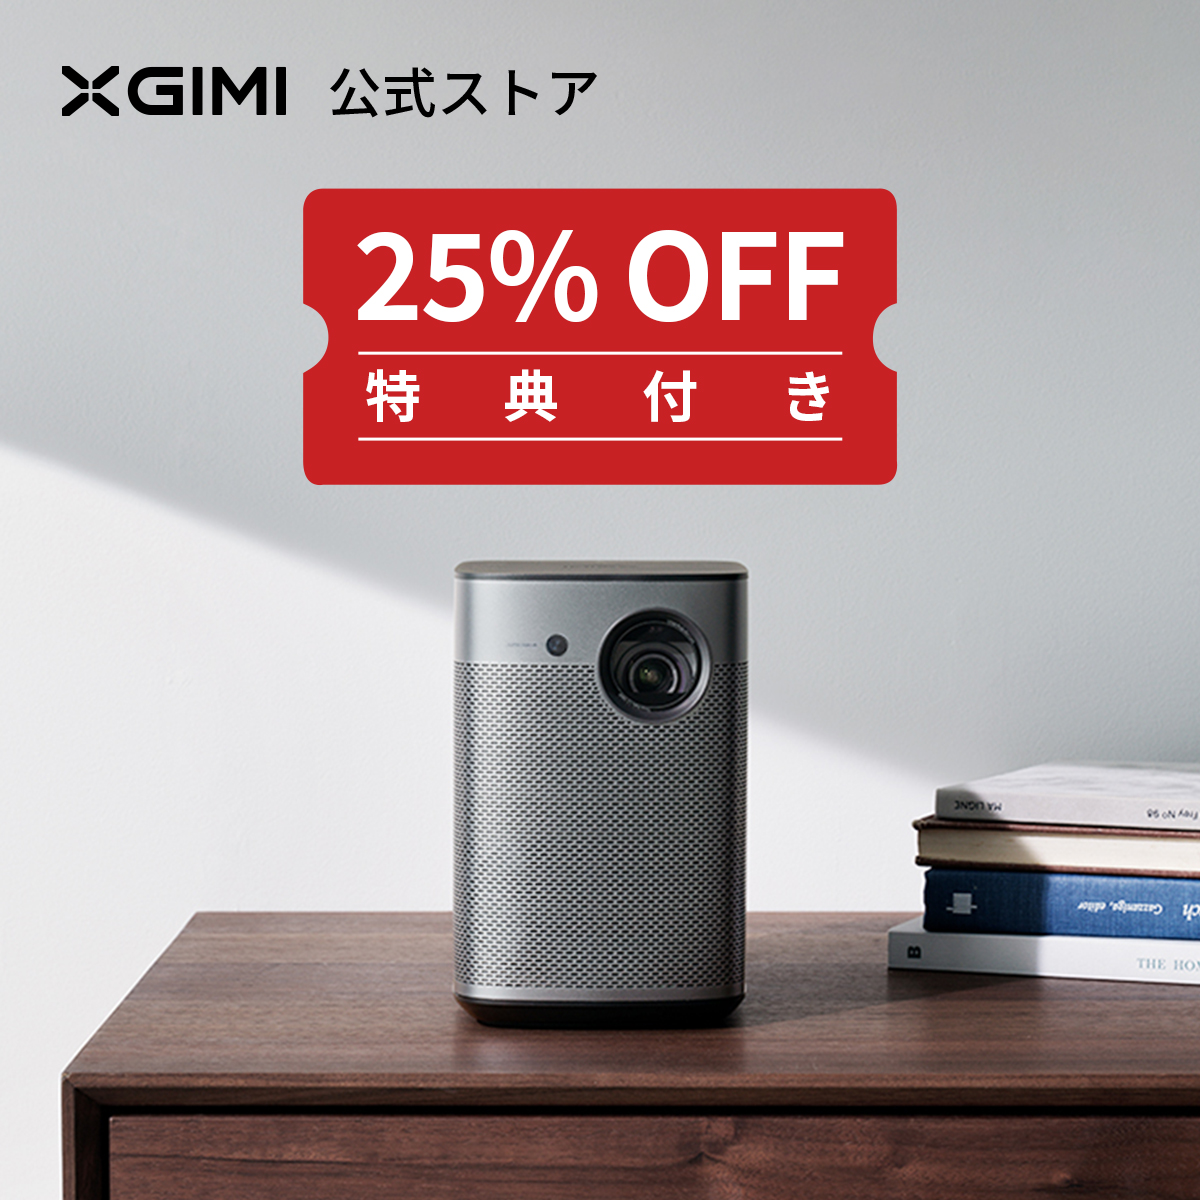 全日本送料無料 まいも堂XGIMI MoGo Pro モバイルプロジェクター 小型